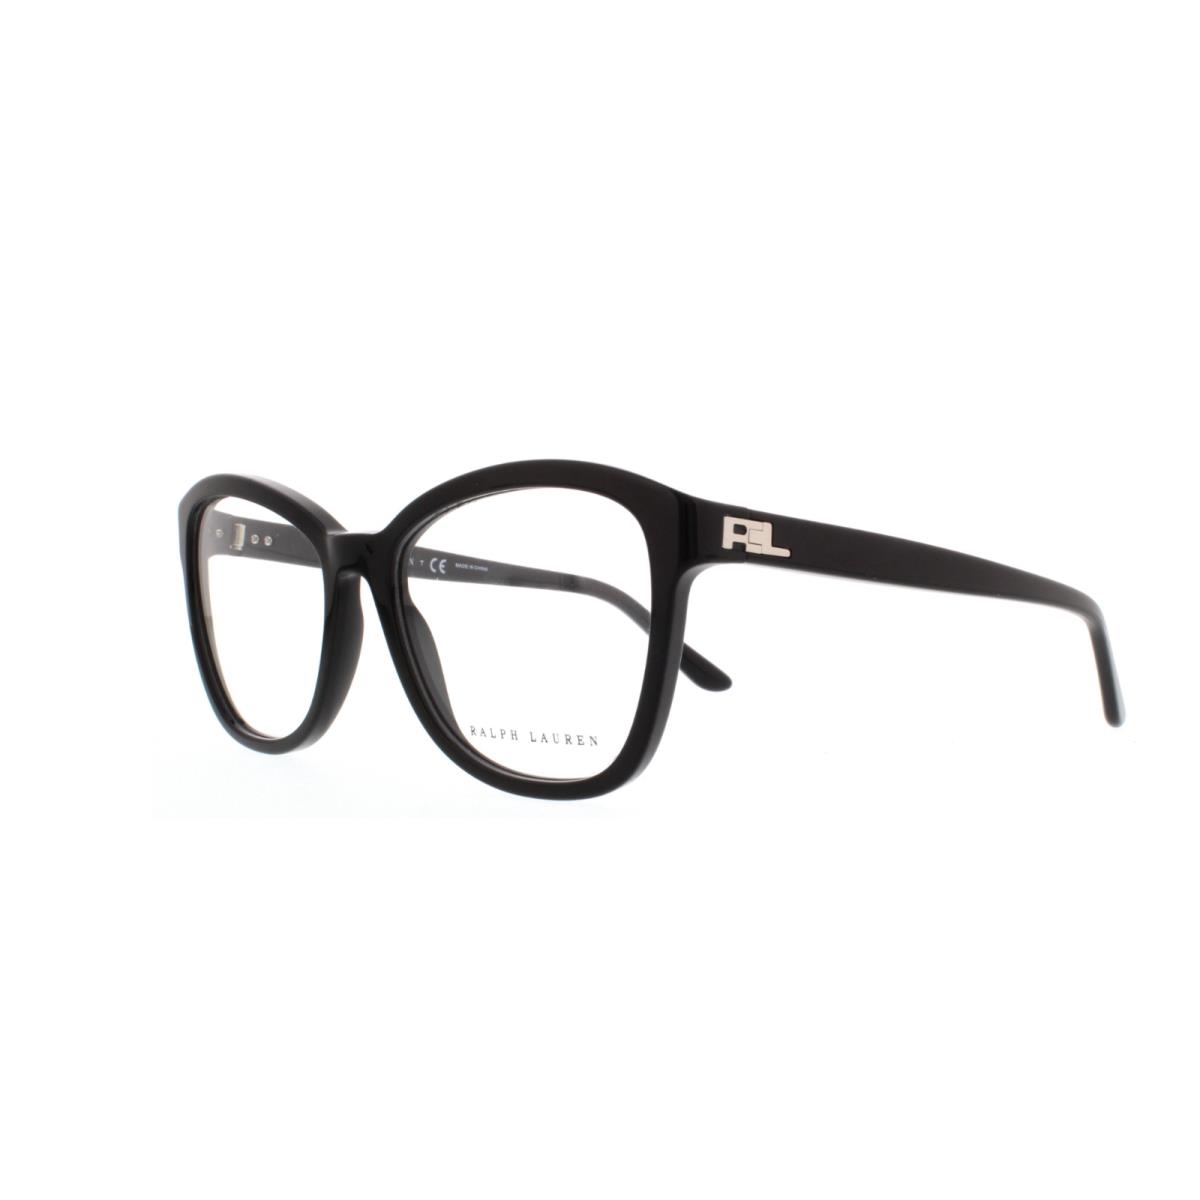 Polo Ralph Lauren RL 6142 5001 Black Eyeglasses 51-17-140 MM - Frame: Black